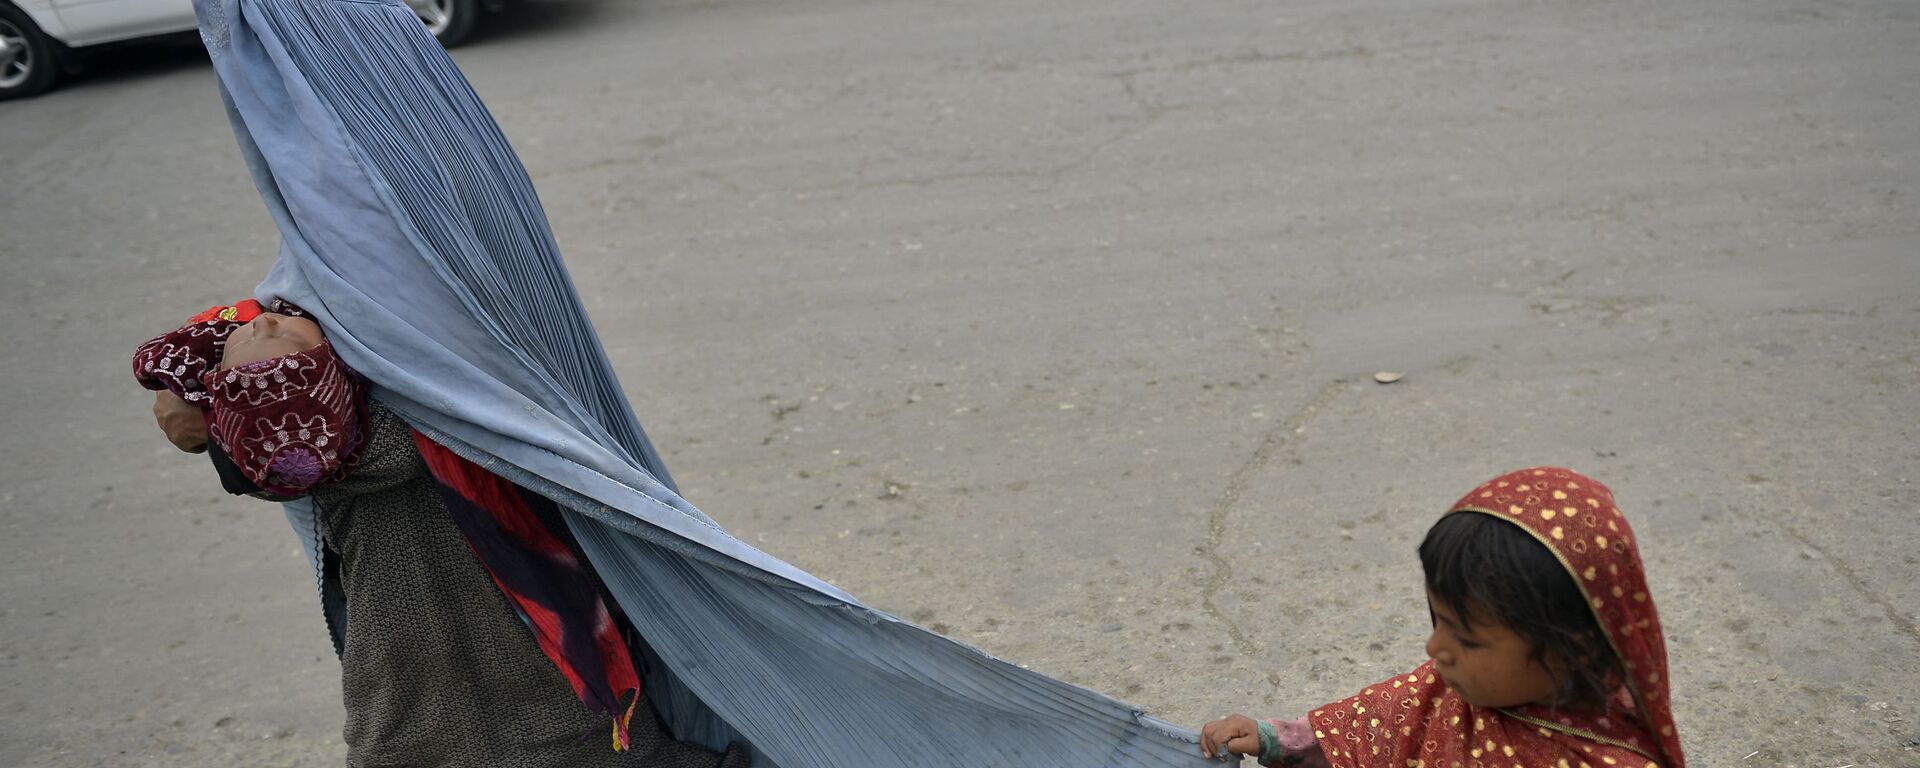 Женщина в бурке с ребенком на улице в Кабуле - Sputnik Тоҷикистон, 1920, 08.12.2021